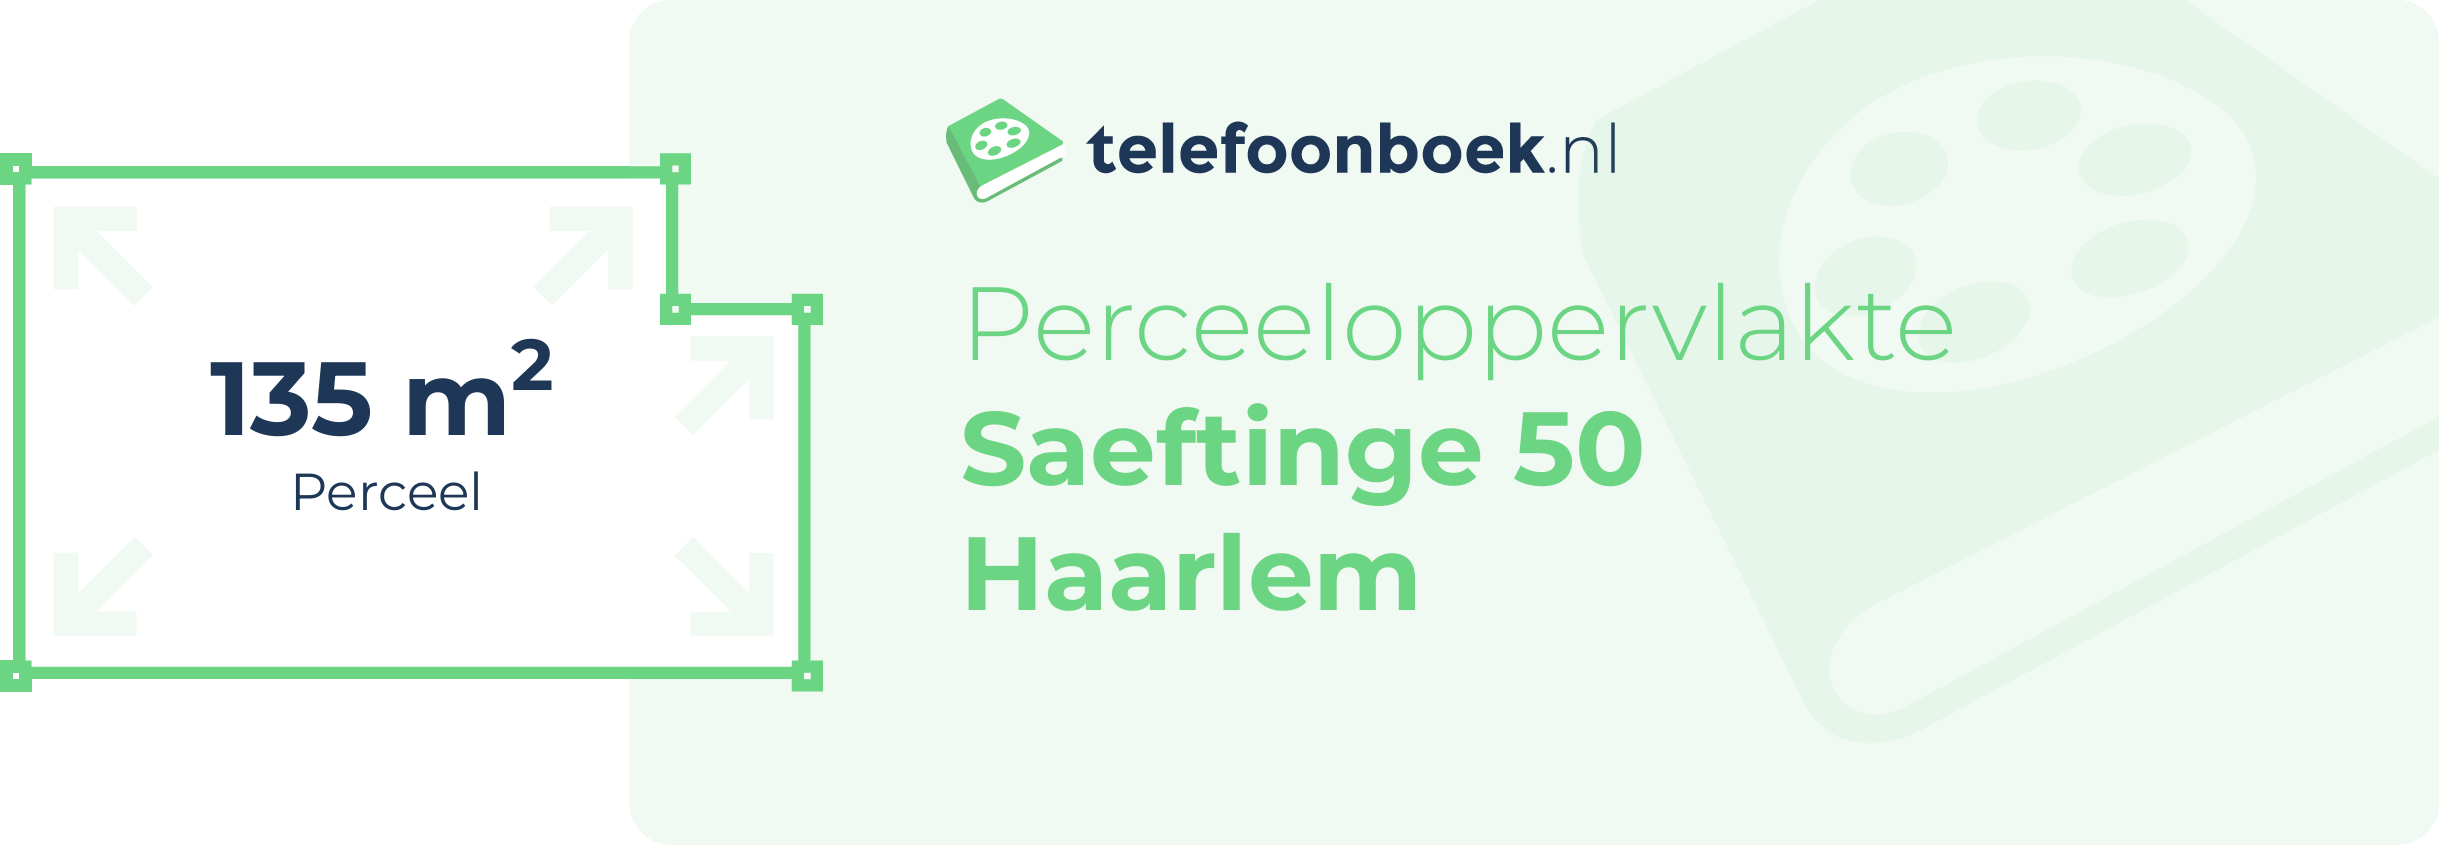 Perceeloppervlakte Saeftinge 50 Haarlem